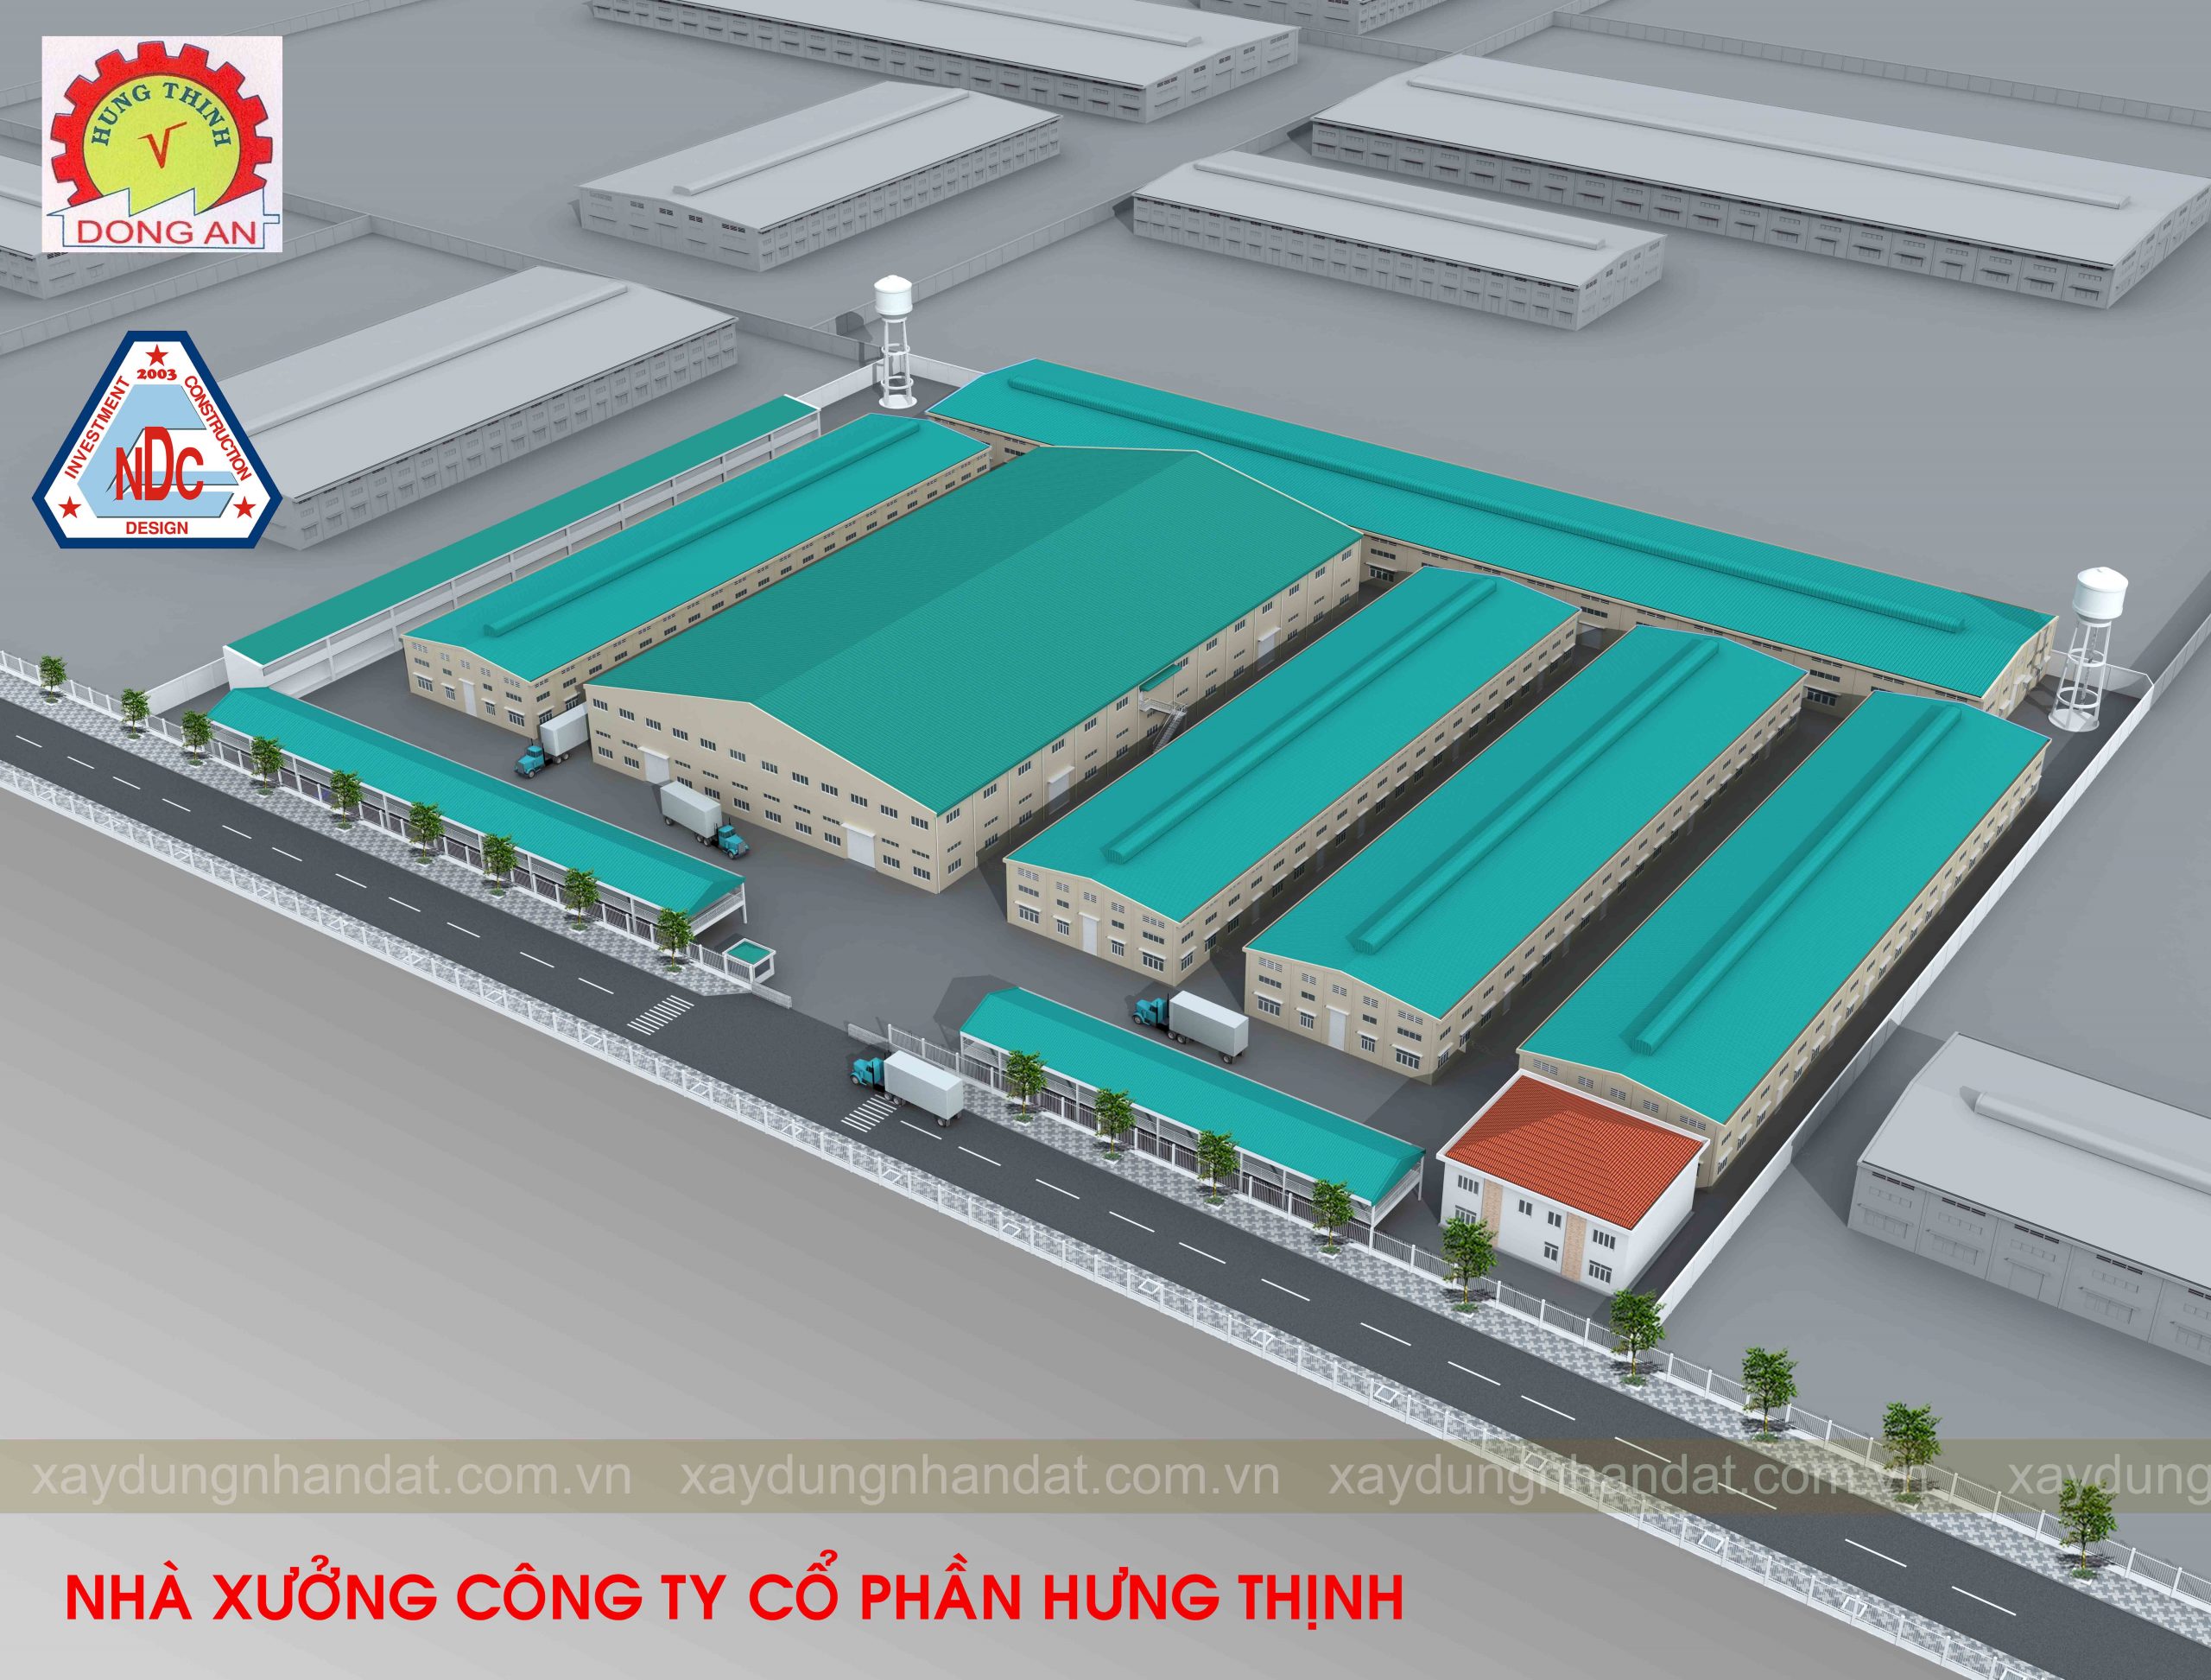 thiết kế thi công cụm nhà xưởng công nghiệp Hưng Thịnh - KCN Đồng An